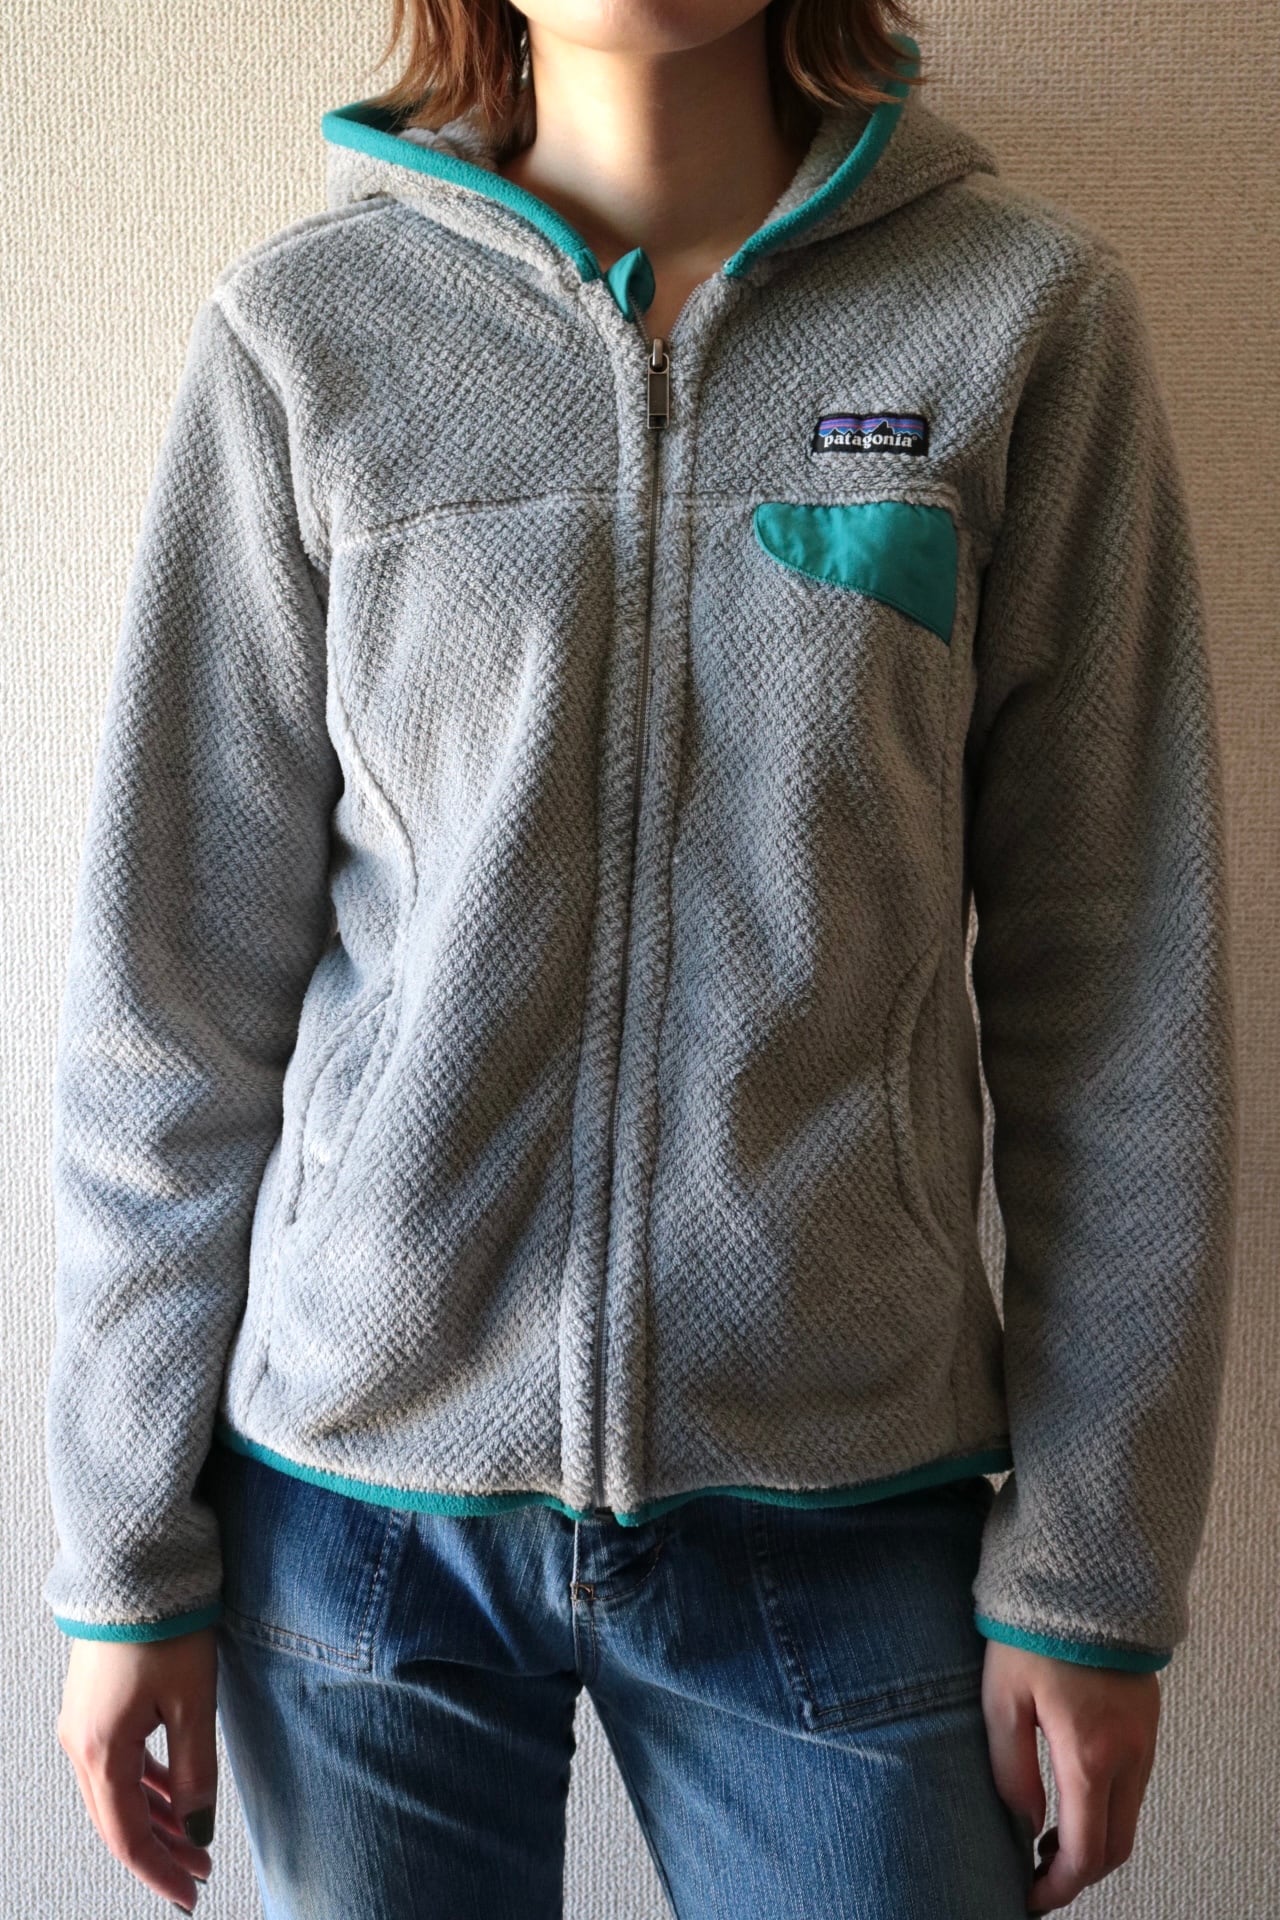 patagonia Re-tool fleece full zip hoodie